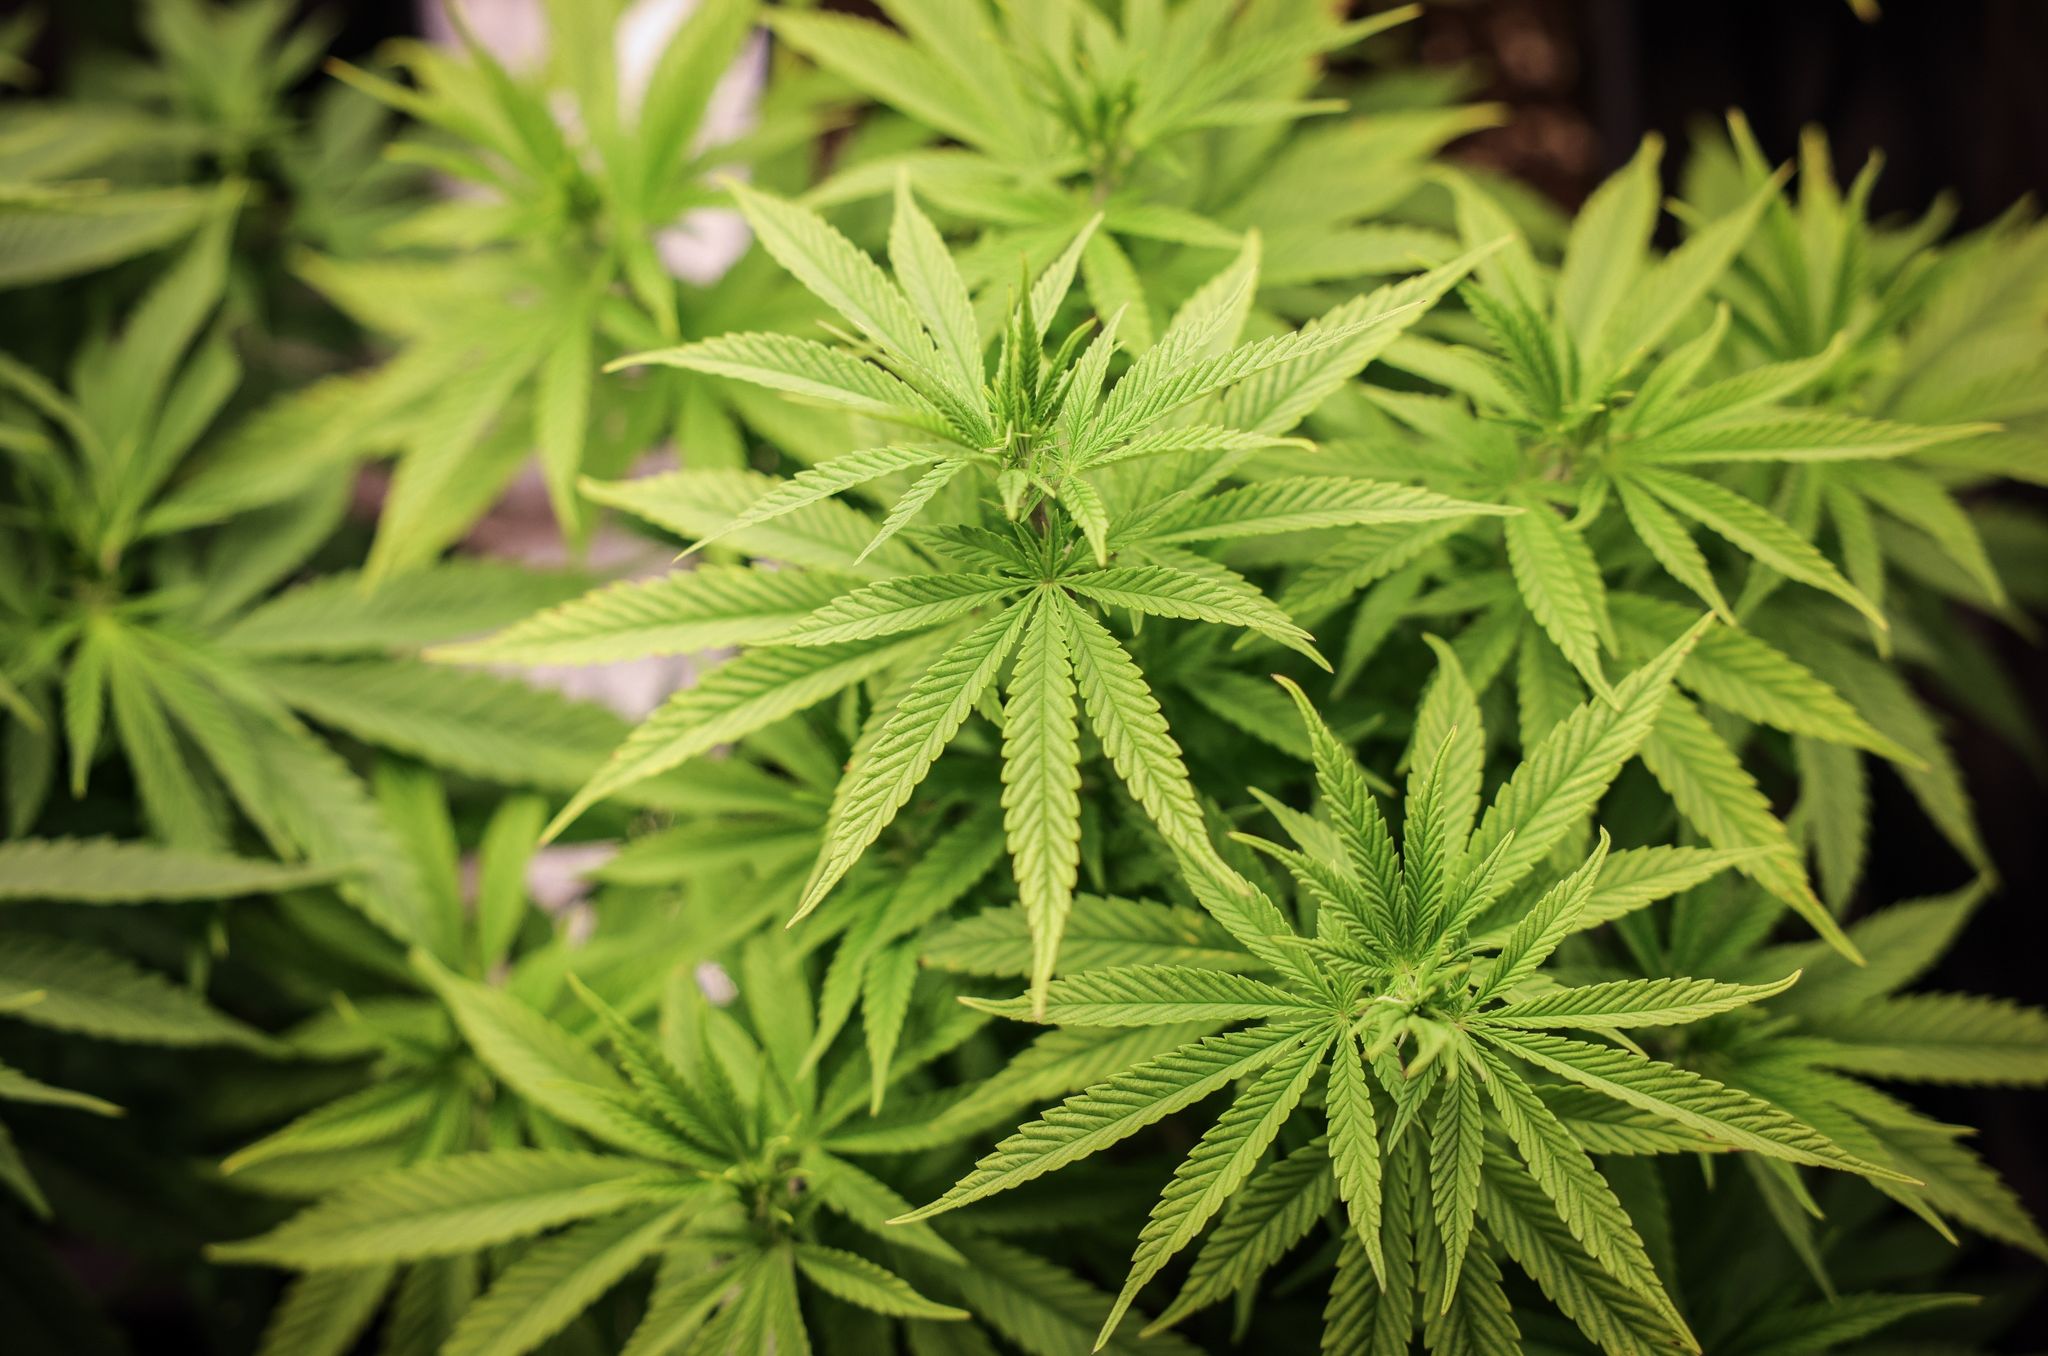 richter zu cannabis: gesetz muss nachgebessert werden